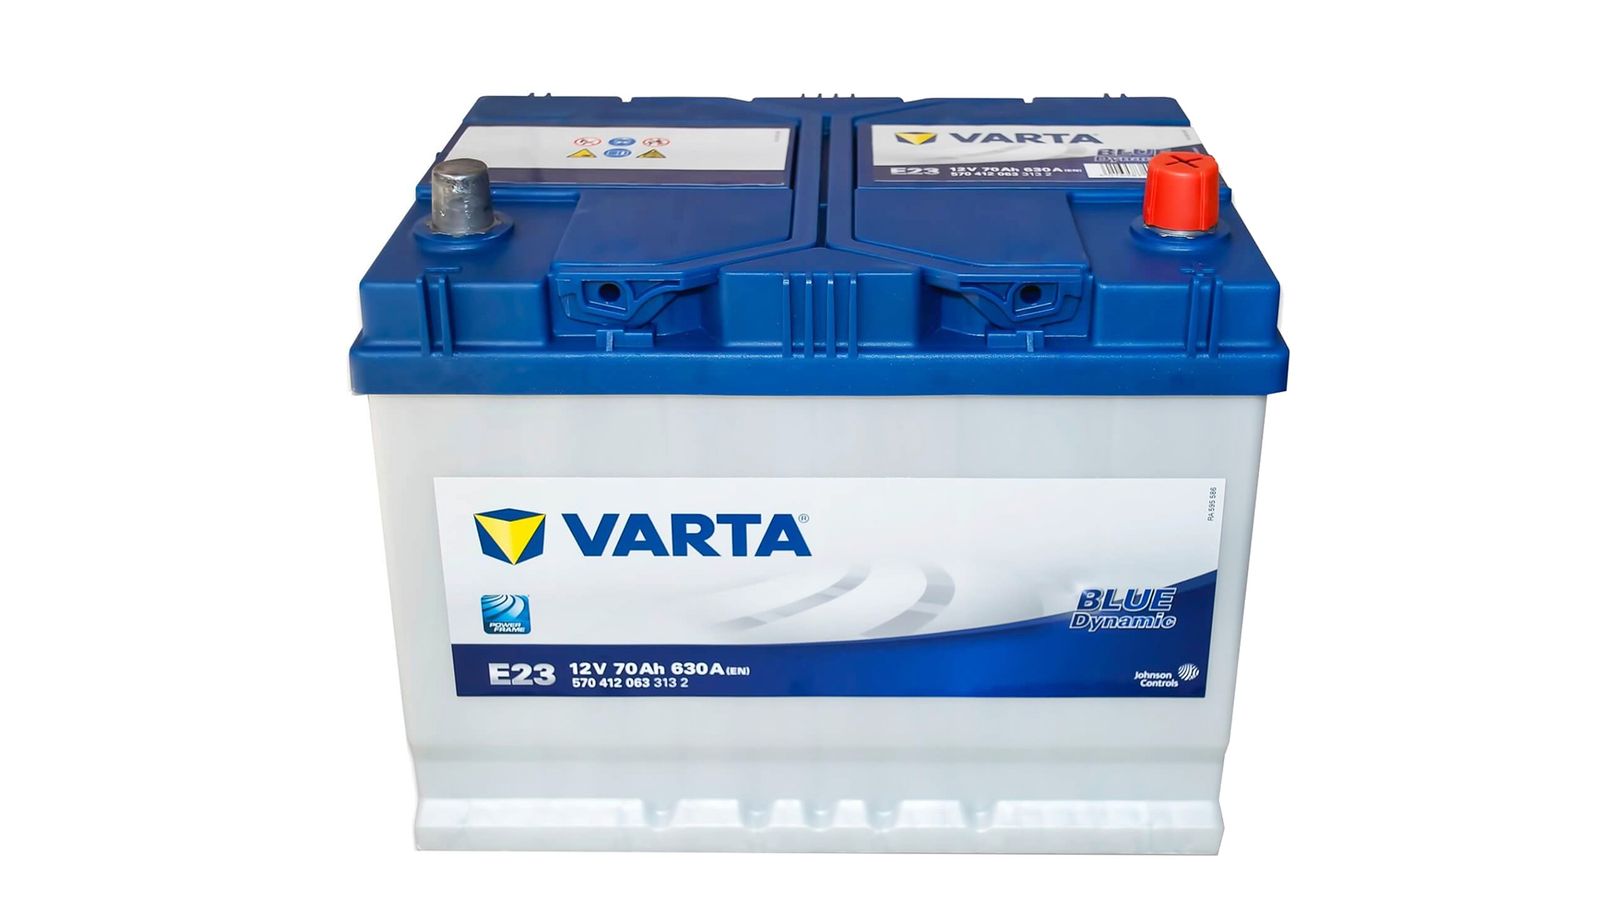 Аккумуляторная батарея VARTA BLUE 6СТ70 E23 * 570 412 063 фотография №1